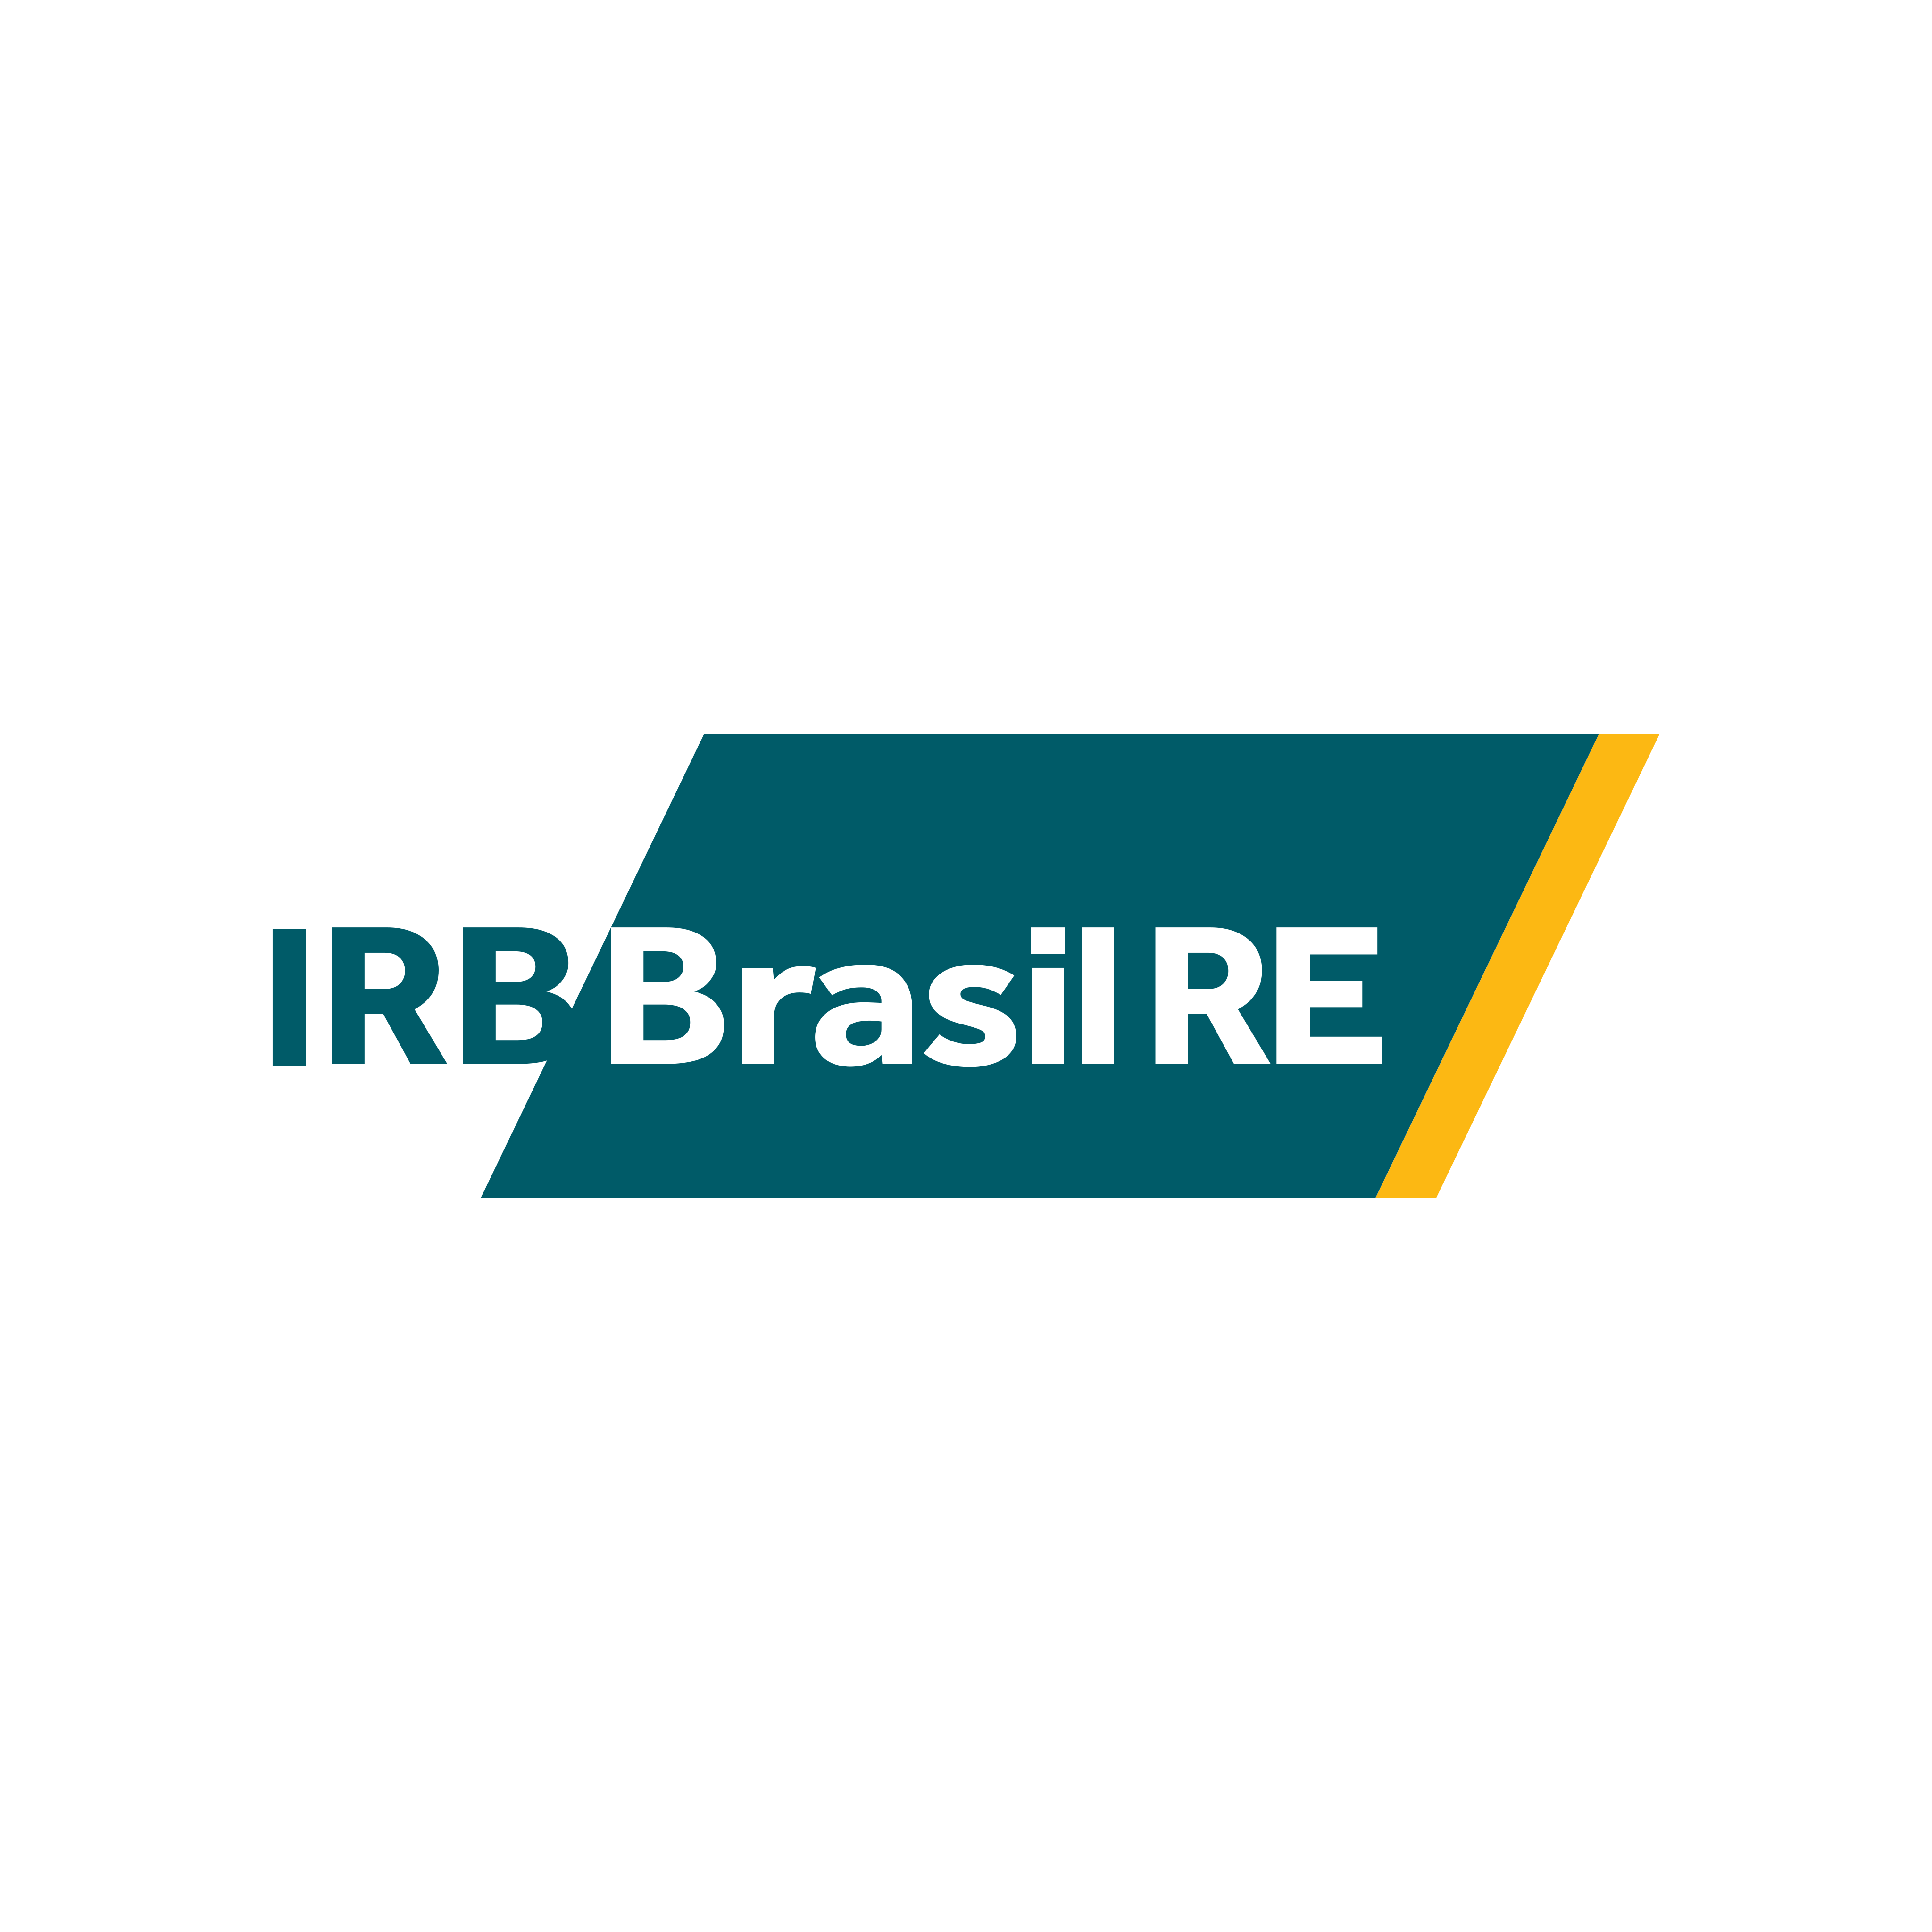 IRB Brasil RE Logo PNG.